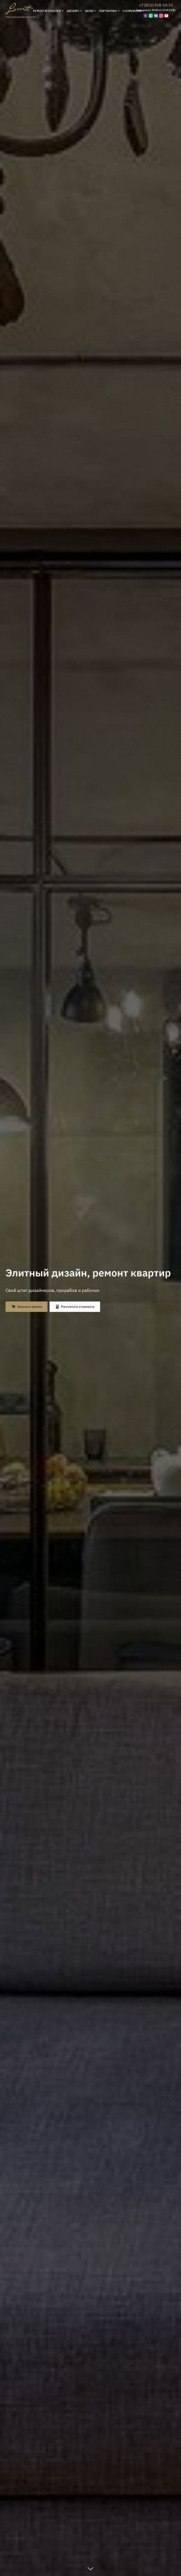 Предпросмотр для luxorta.ru — Строительная компания Люксорта